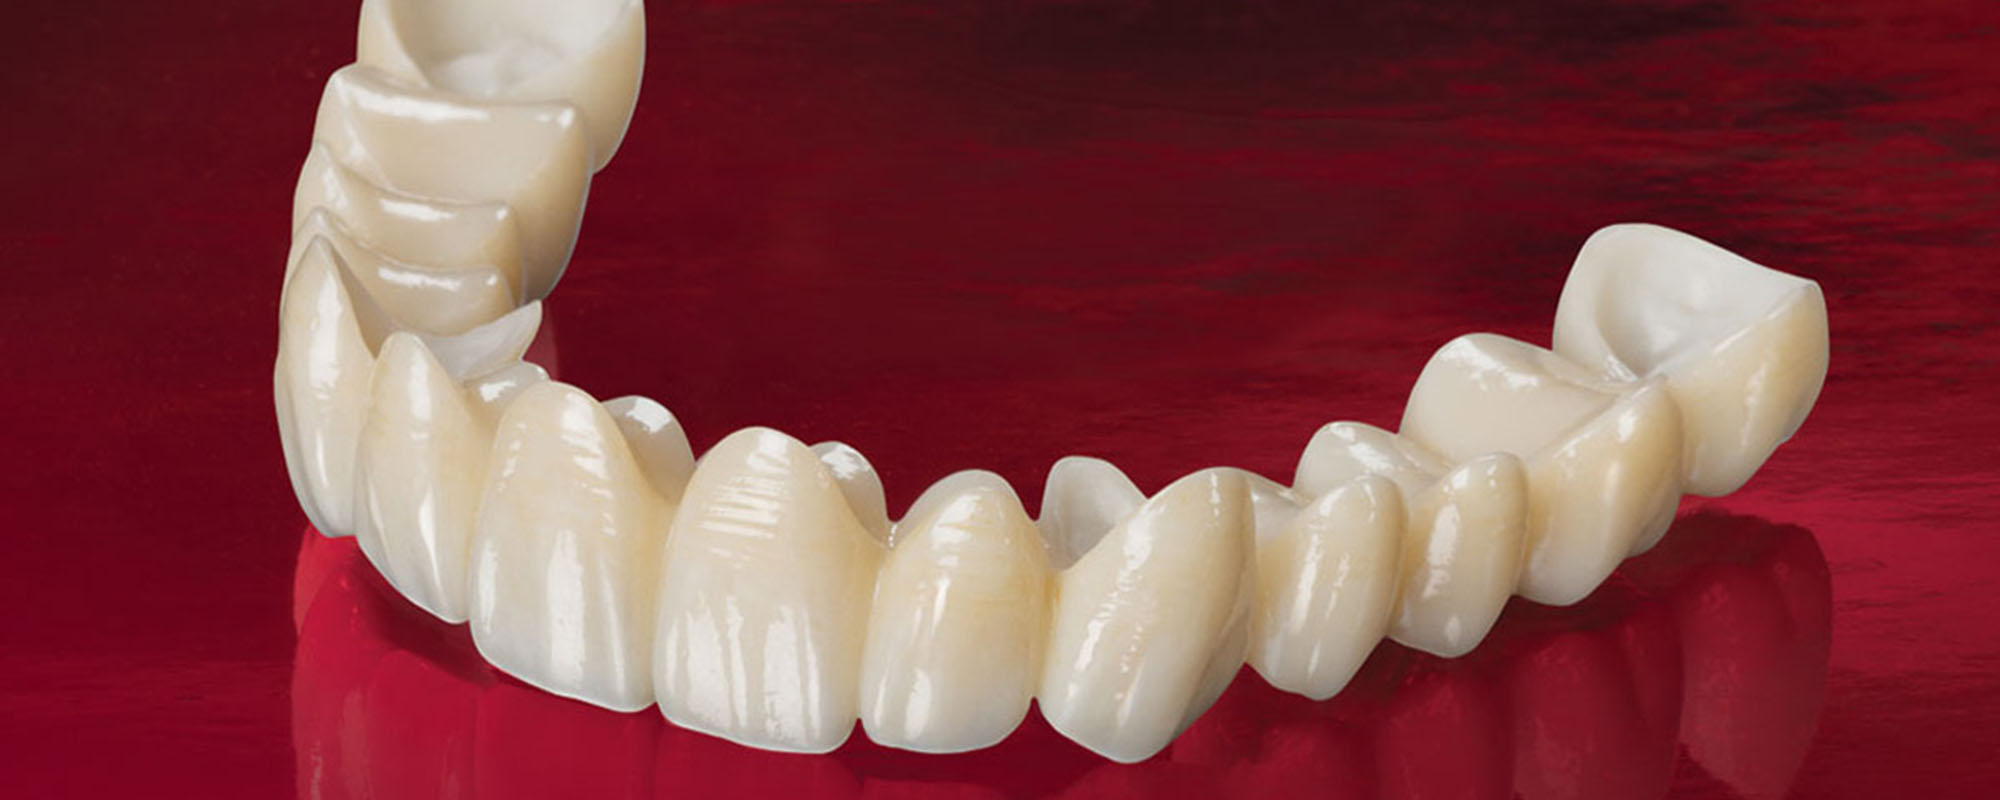 Можно ли отбелить металлокерамические зубы